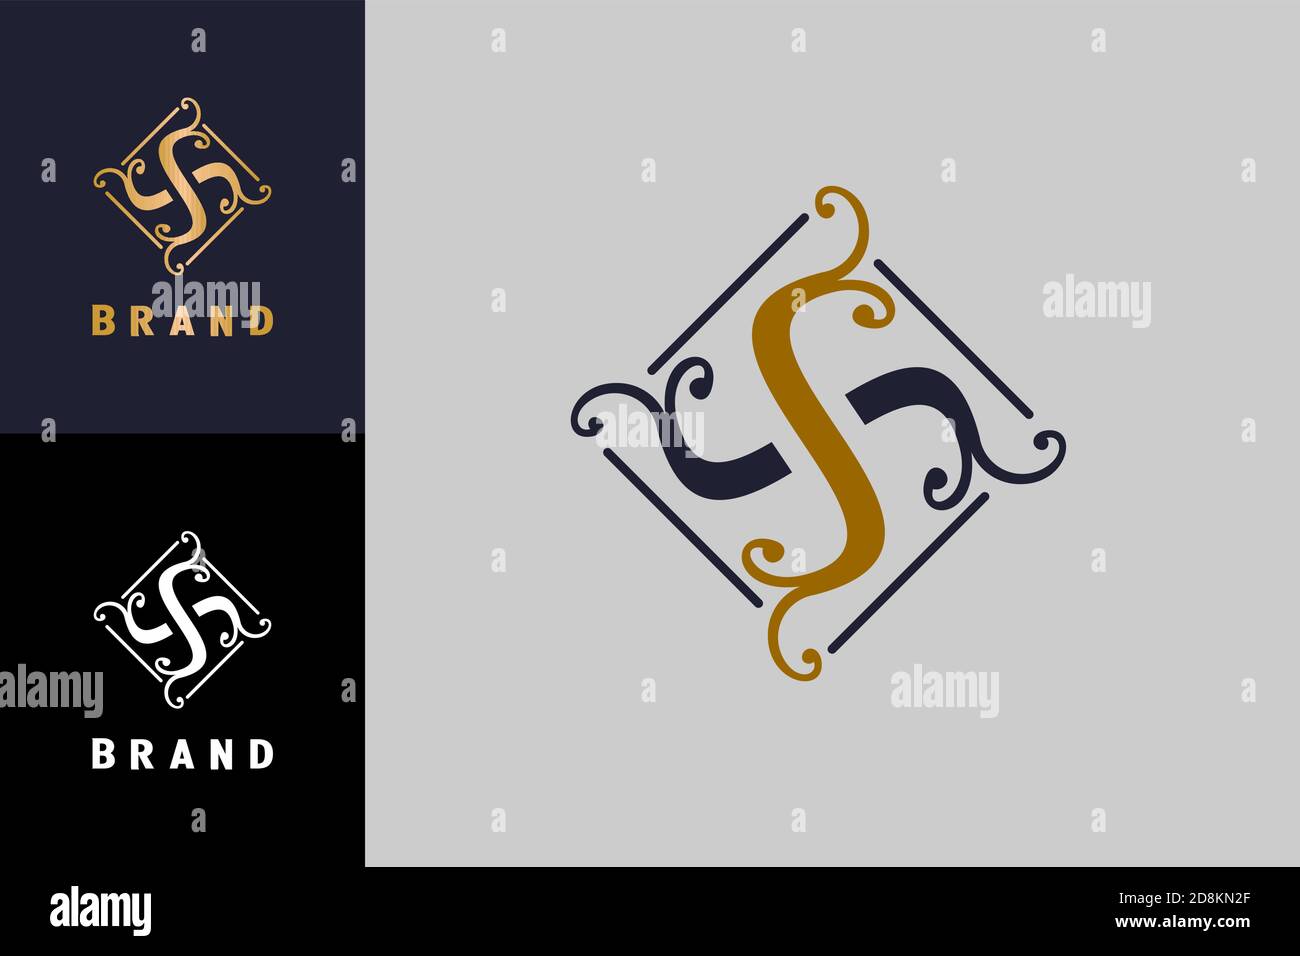 Buchstaben S oder SS Logovorlage, ornamentales Designkonzept, moderne Premium-Markenqualität. Stock Vektor